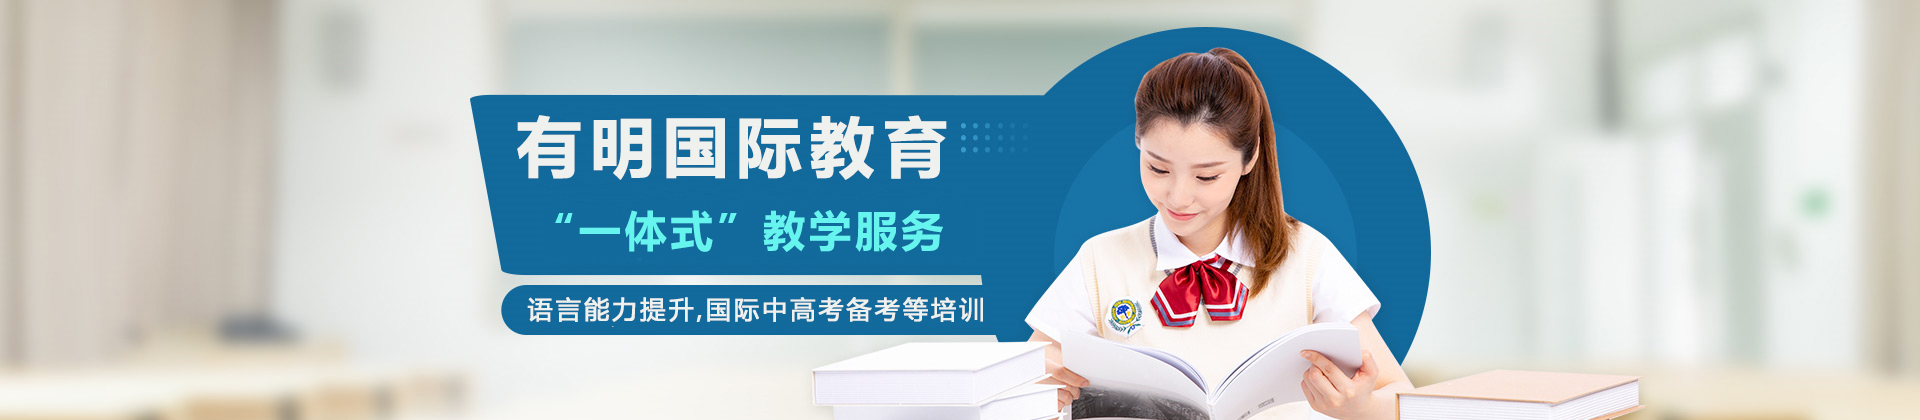 天津有明国际教育